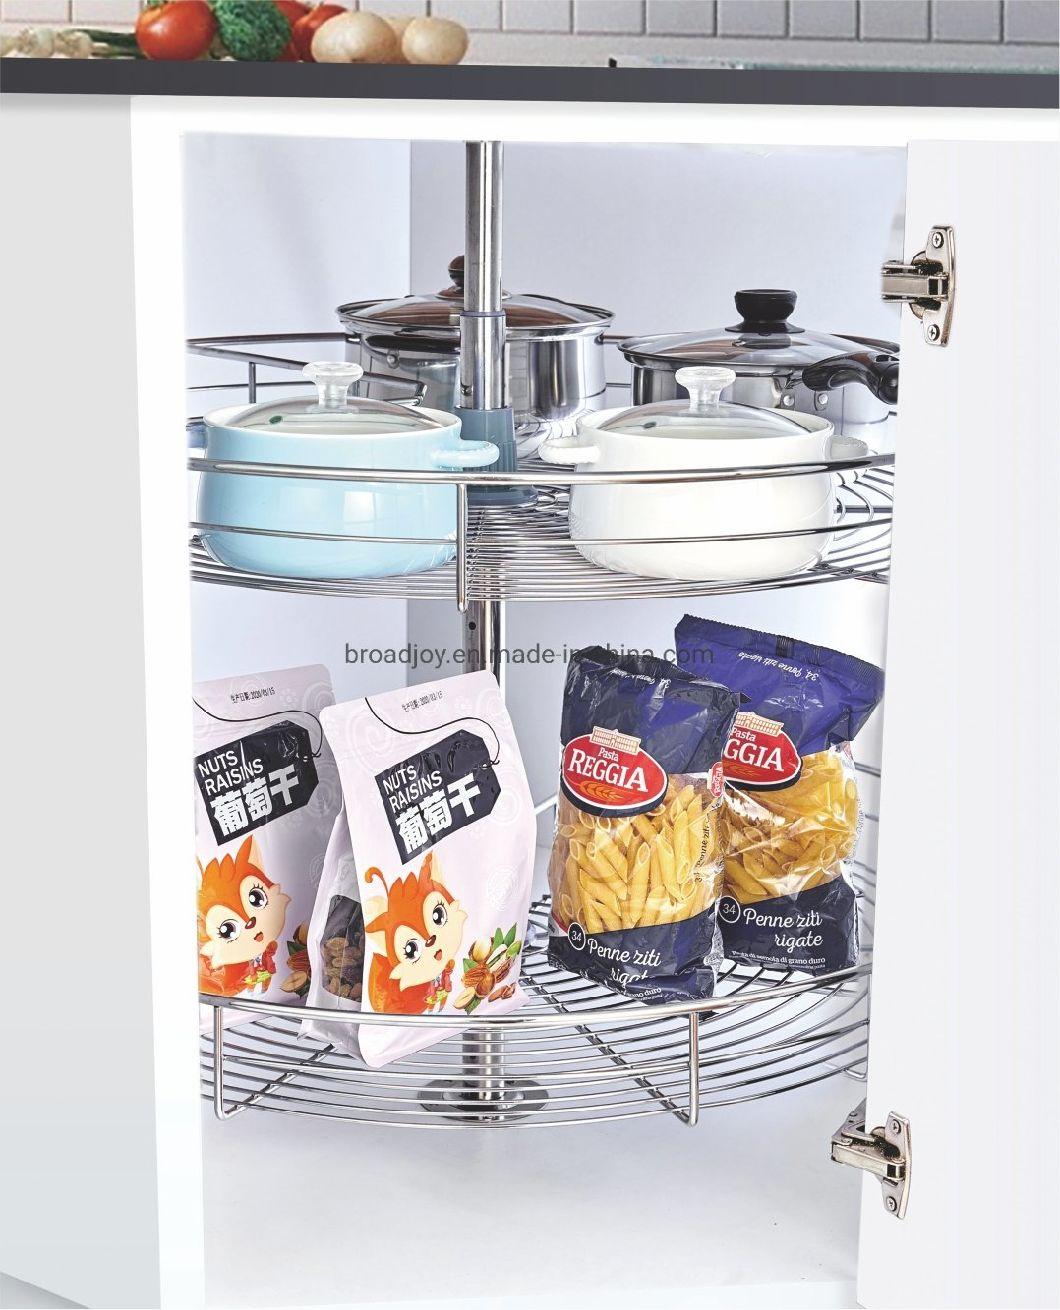 China Supplier Push-Pull Cabinet Storage Drawer Iron Wire Organizer Basket Kitchen Accessories Kitchenware Sundries Rack Kitchen Storage Rack